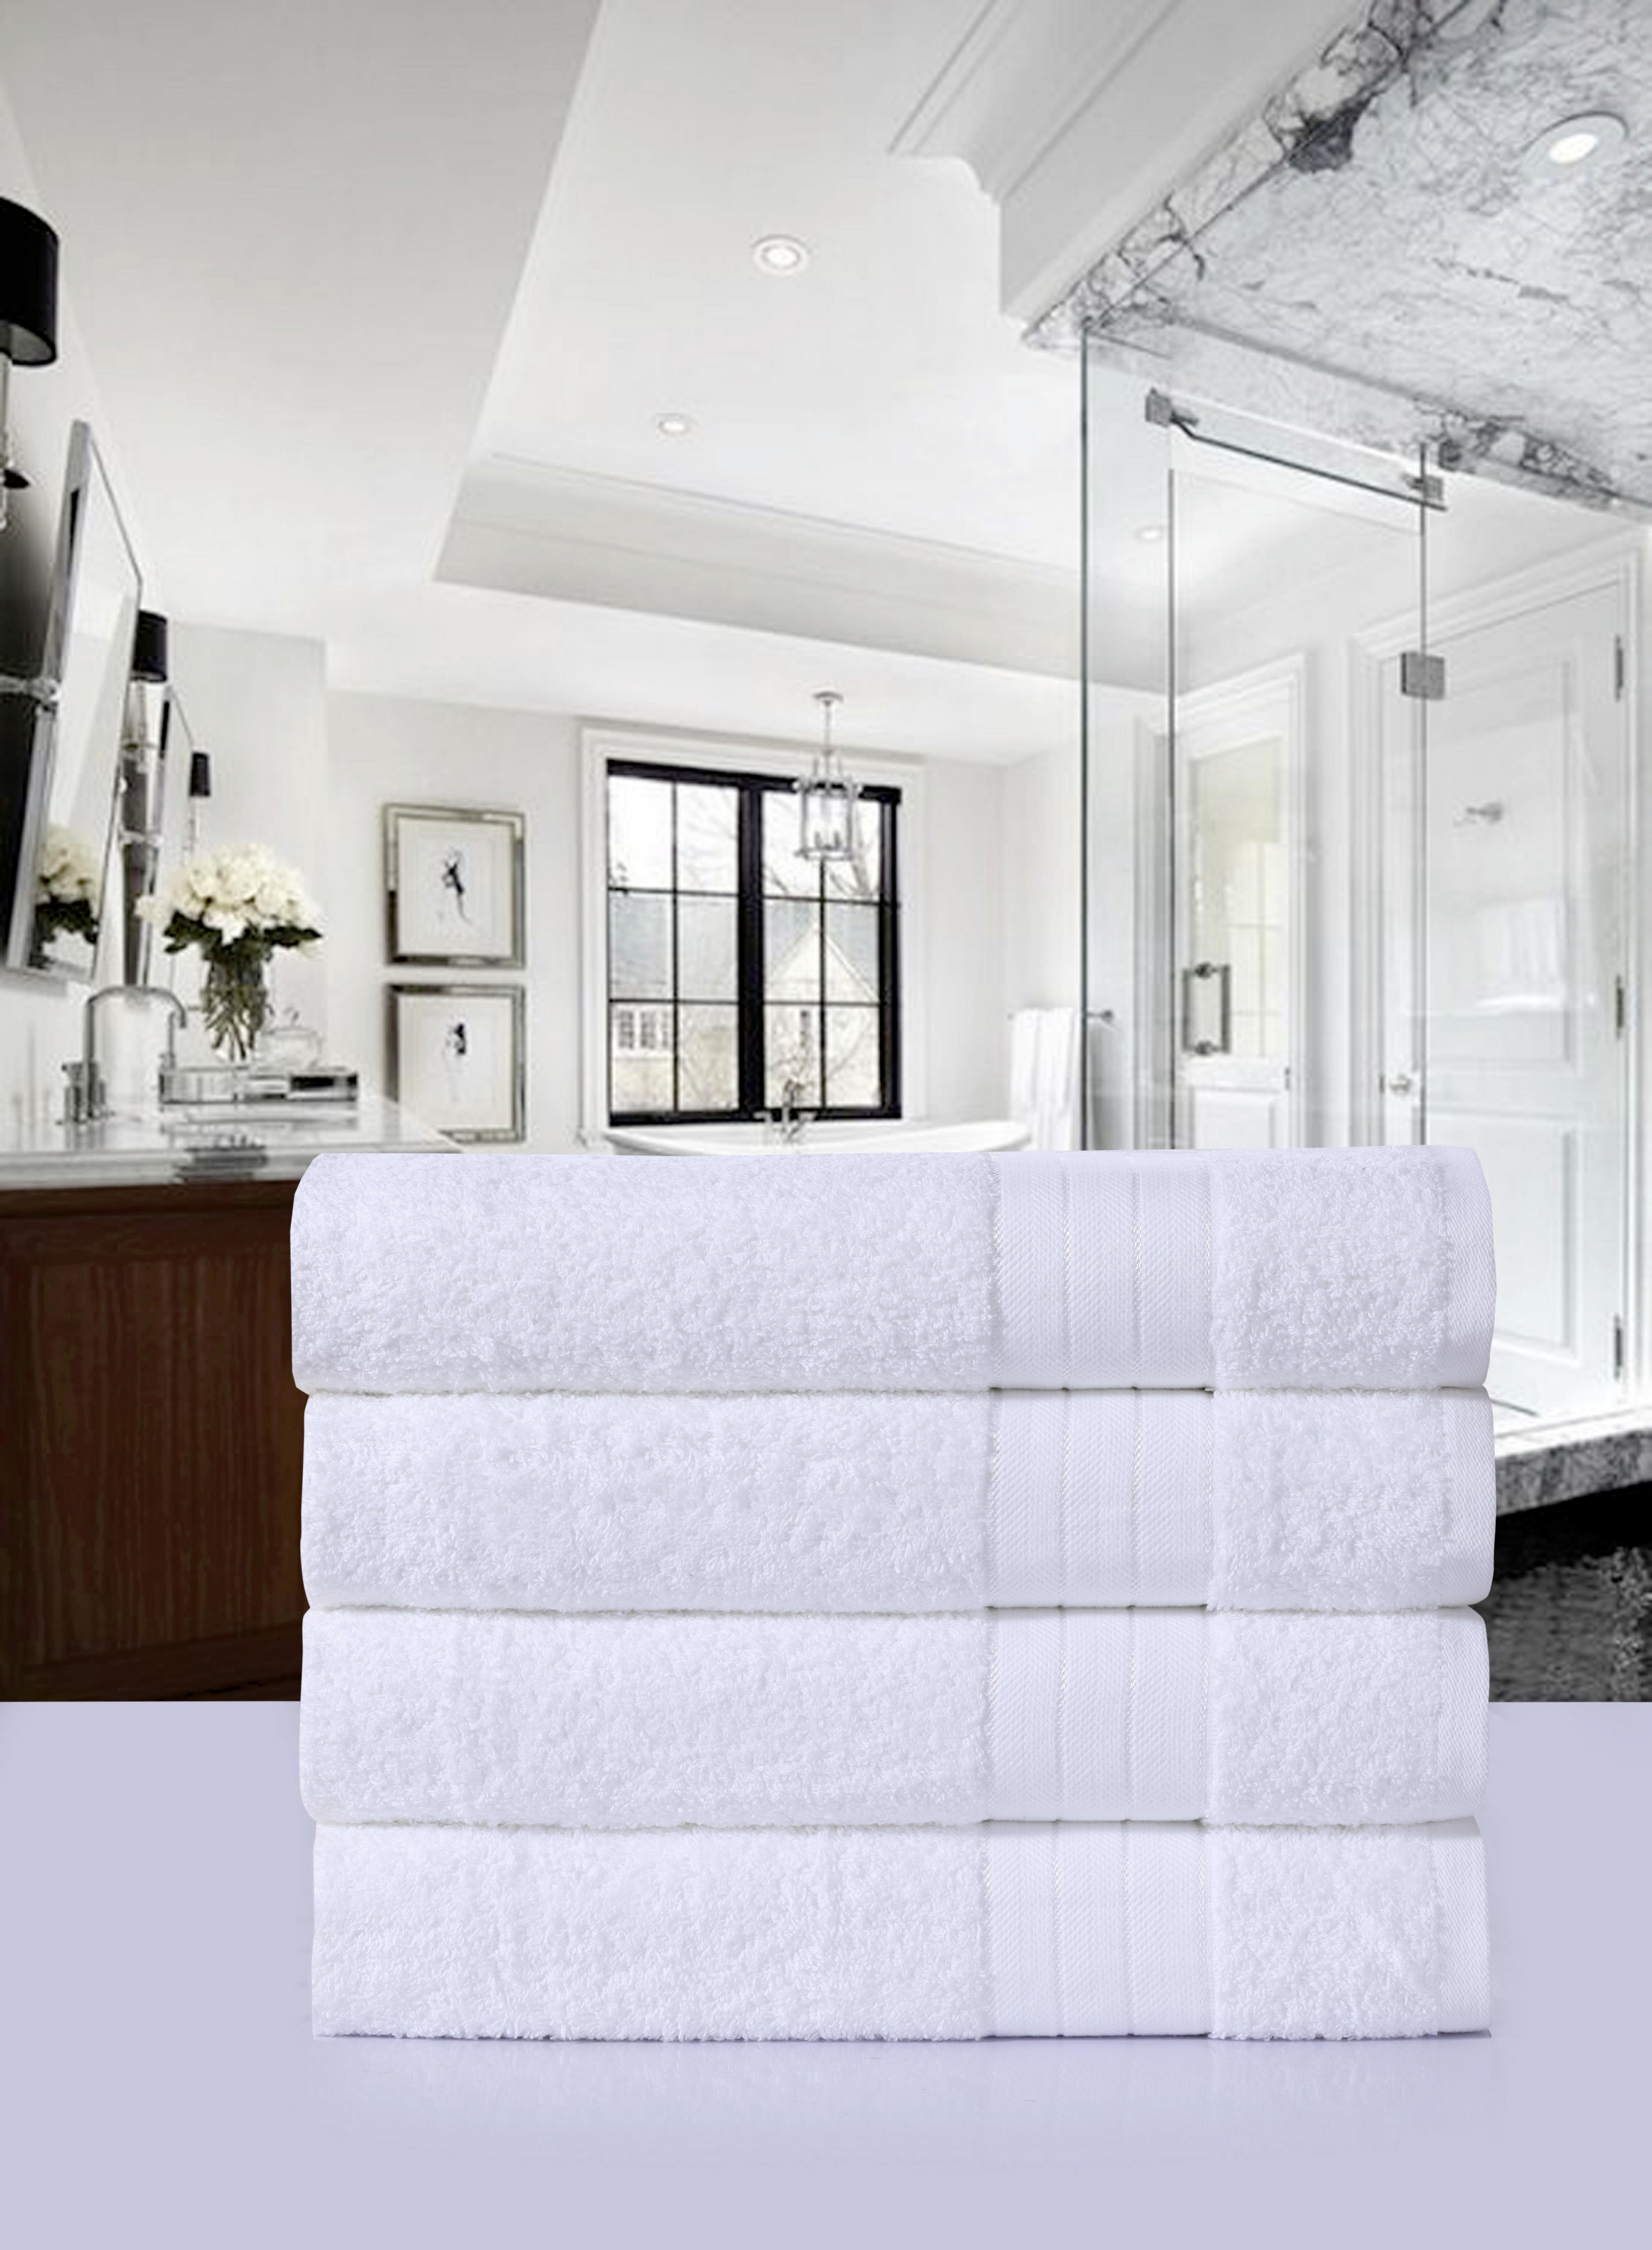 Handtuch Cotton Baumwolle 500 G/M2 Weiß 50x100 cm 4er-Set - Weiß, KONVENTIONELL, Textil (50/100cm) - MID.YOU